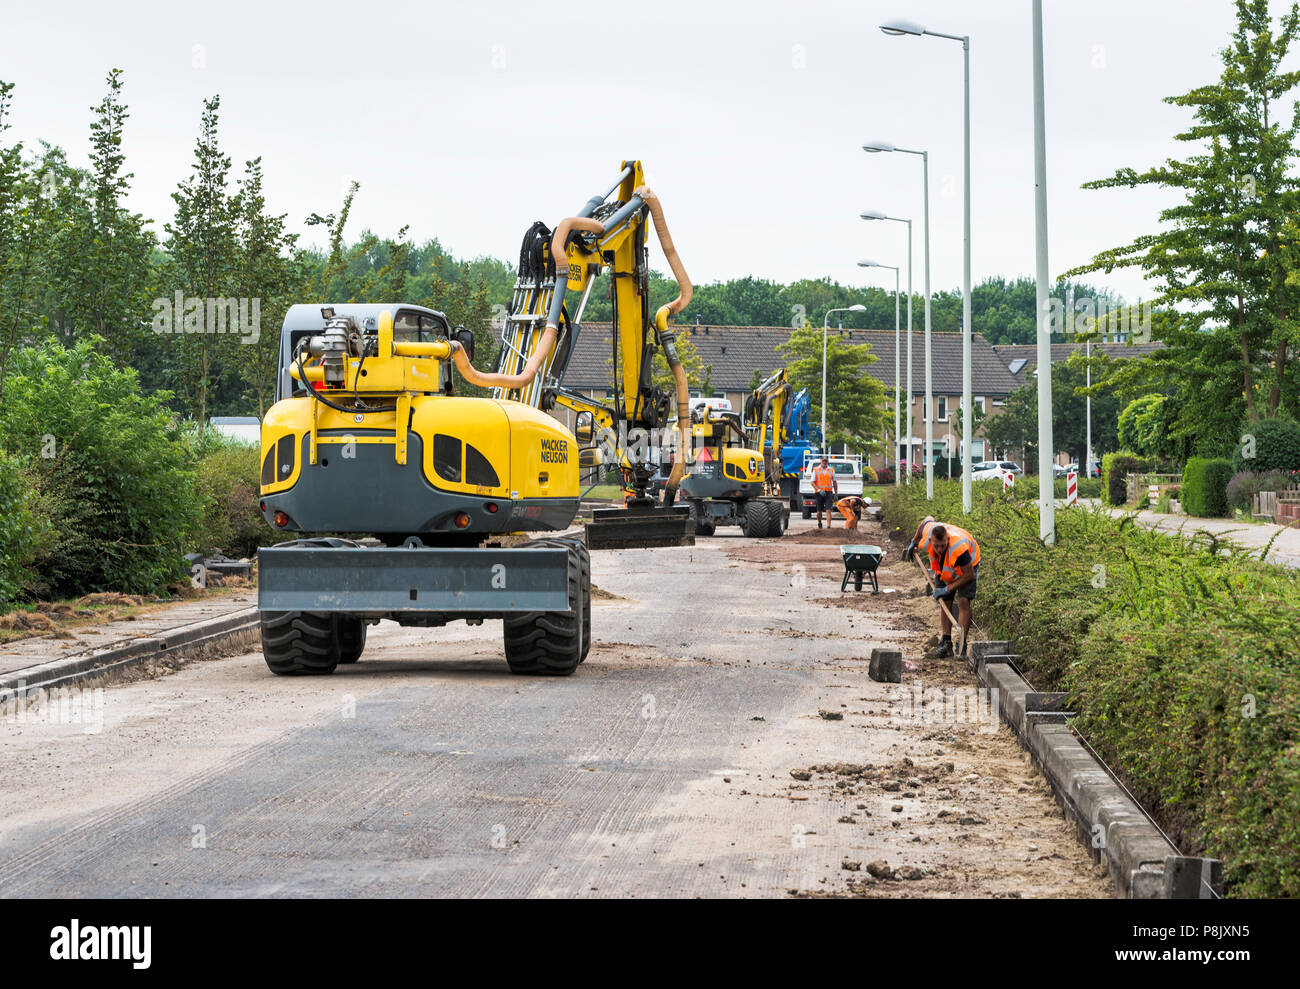 Hellevoetlsuis,Olanda-12-luglio-2018:costruzione i lavoratori sono occupati n rinnovo la strada nel villaggio,uno in un bianco le strade hanno per ottenere nuovo asfalto e verrà chiuso per diverse settimane Foto Stock